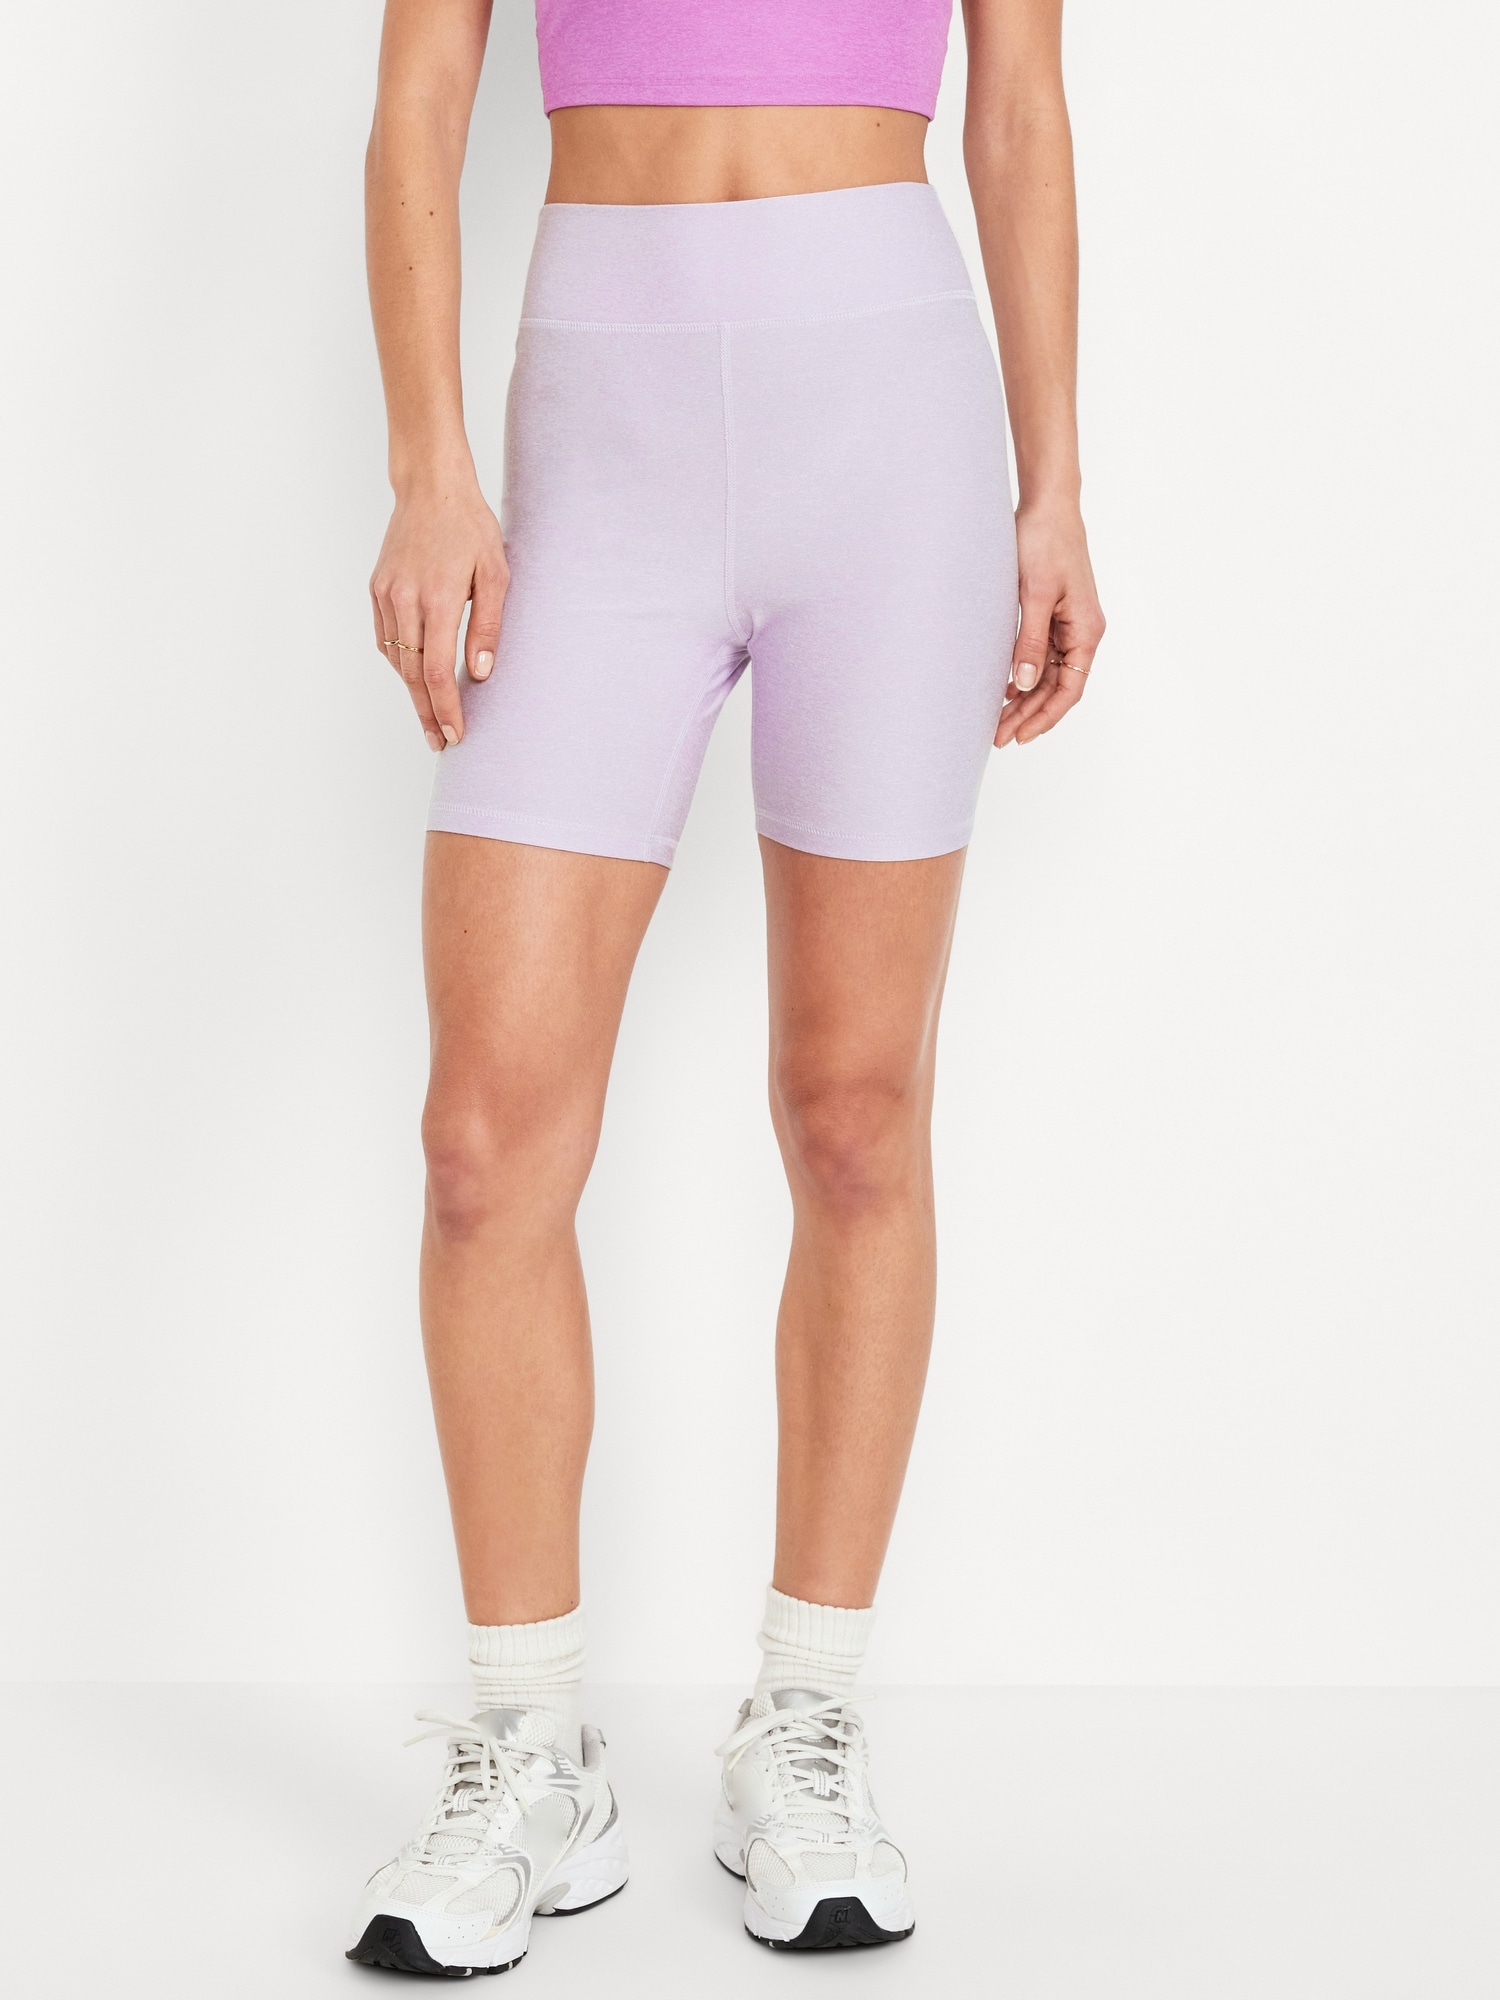 Extra High-Waisted Cloud+ Biker Shorts -- 6-inch inseam Hot Deal